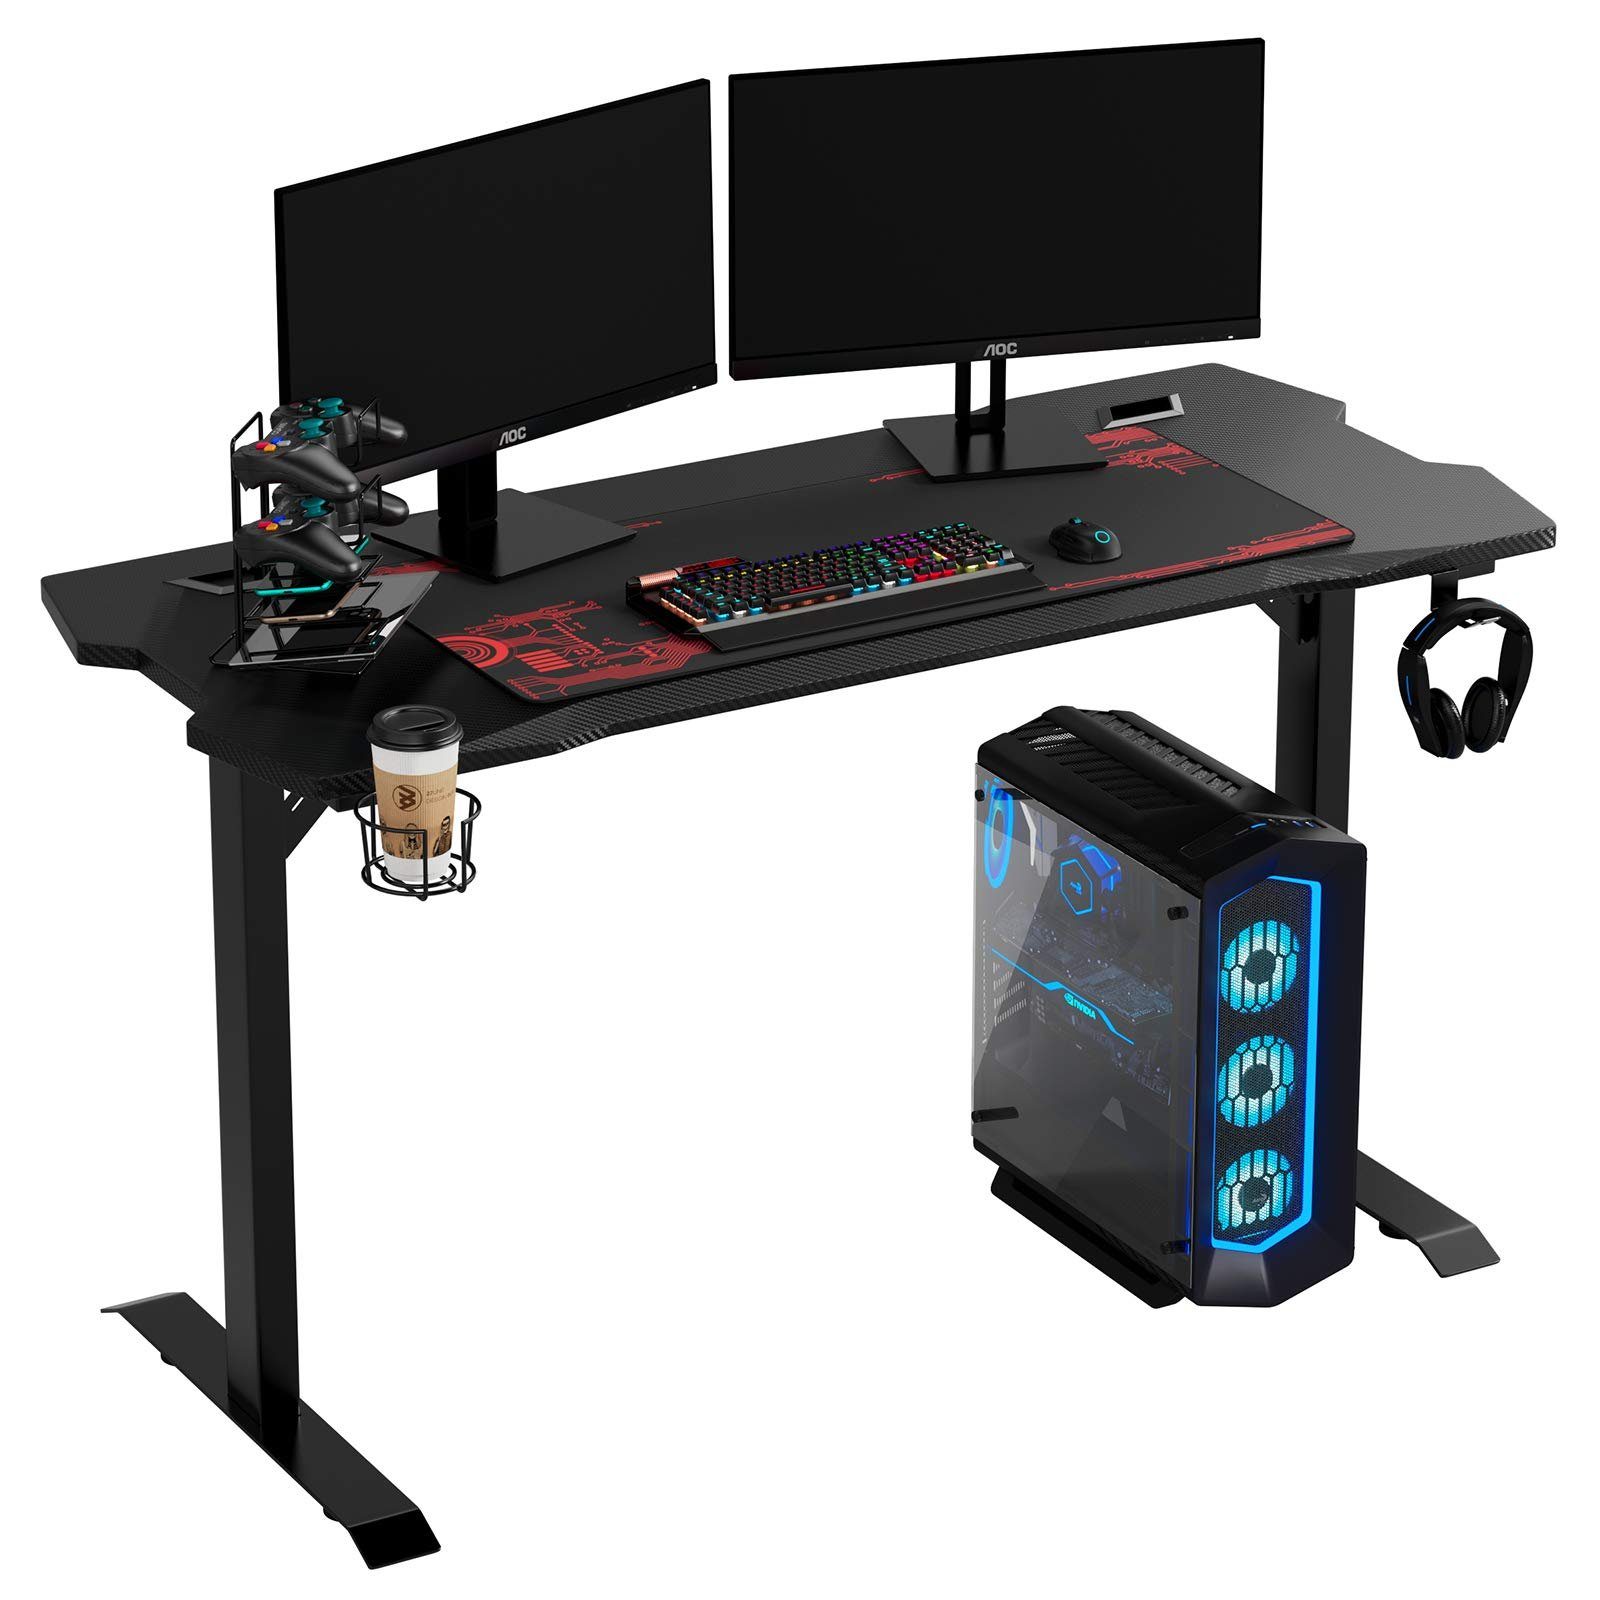 Homfa Gamingtisch, Computertisch, 140cm Schreibtisch, Gamer Tisch, schwarz, mit Mauspad